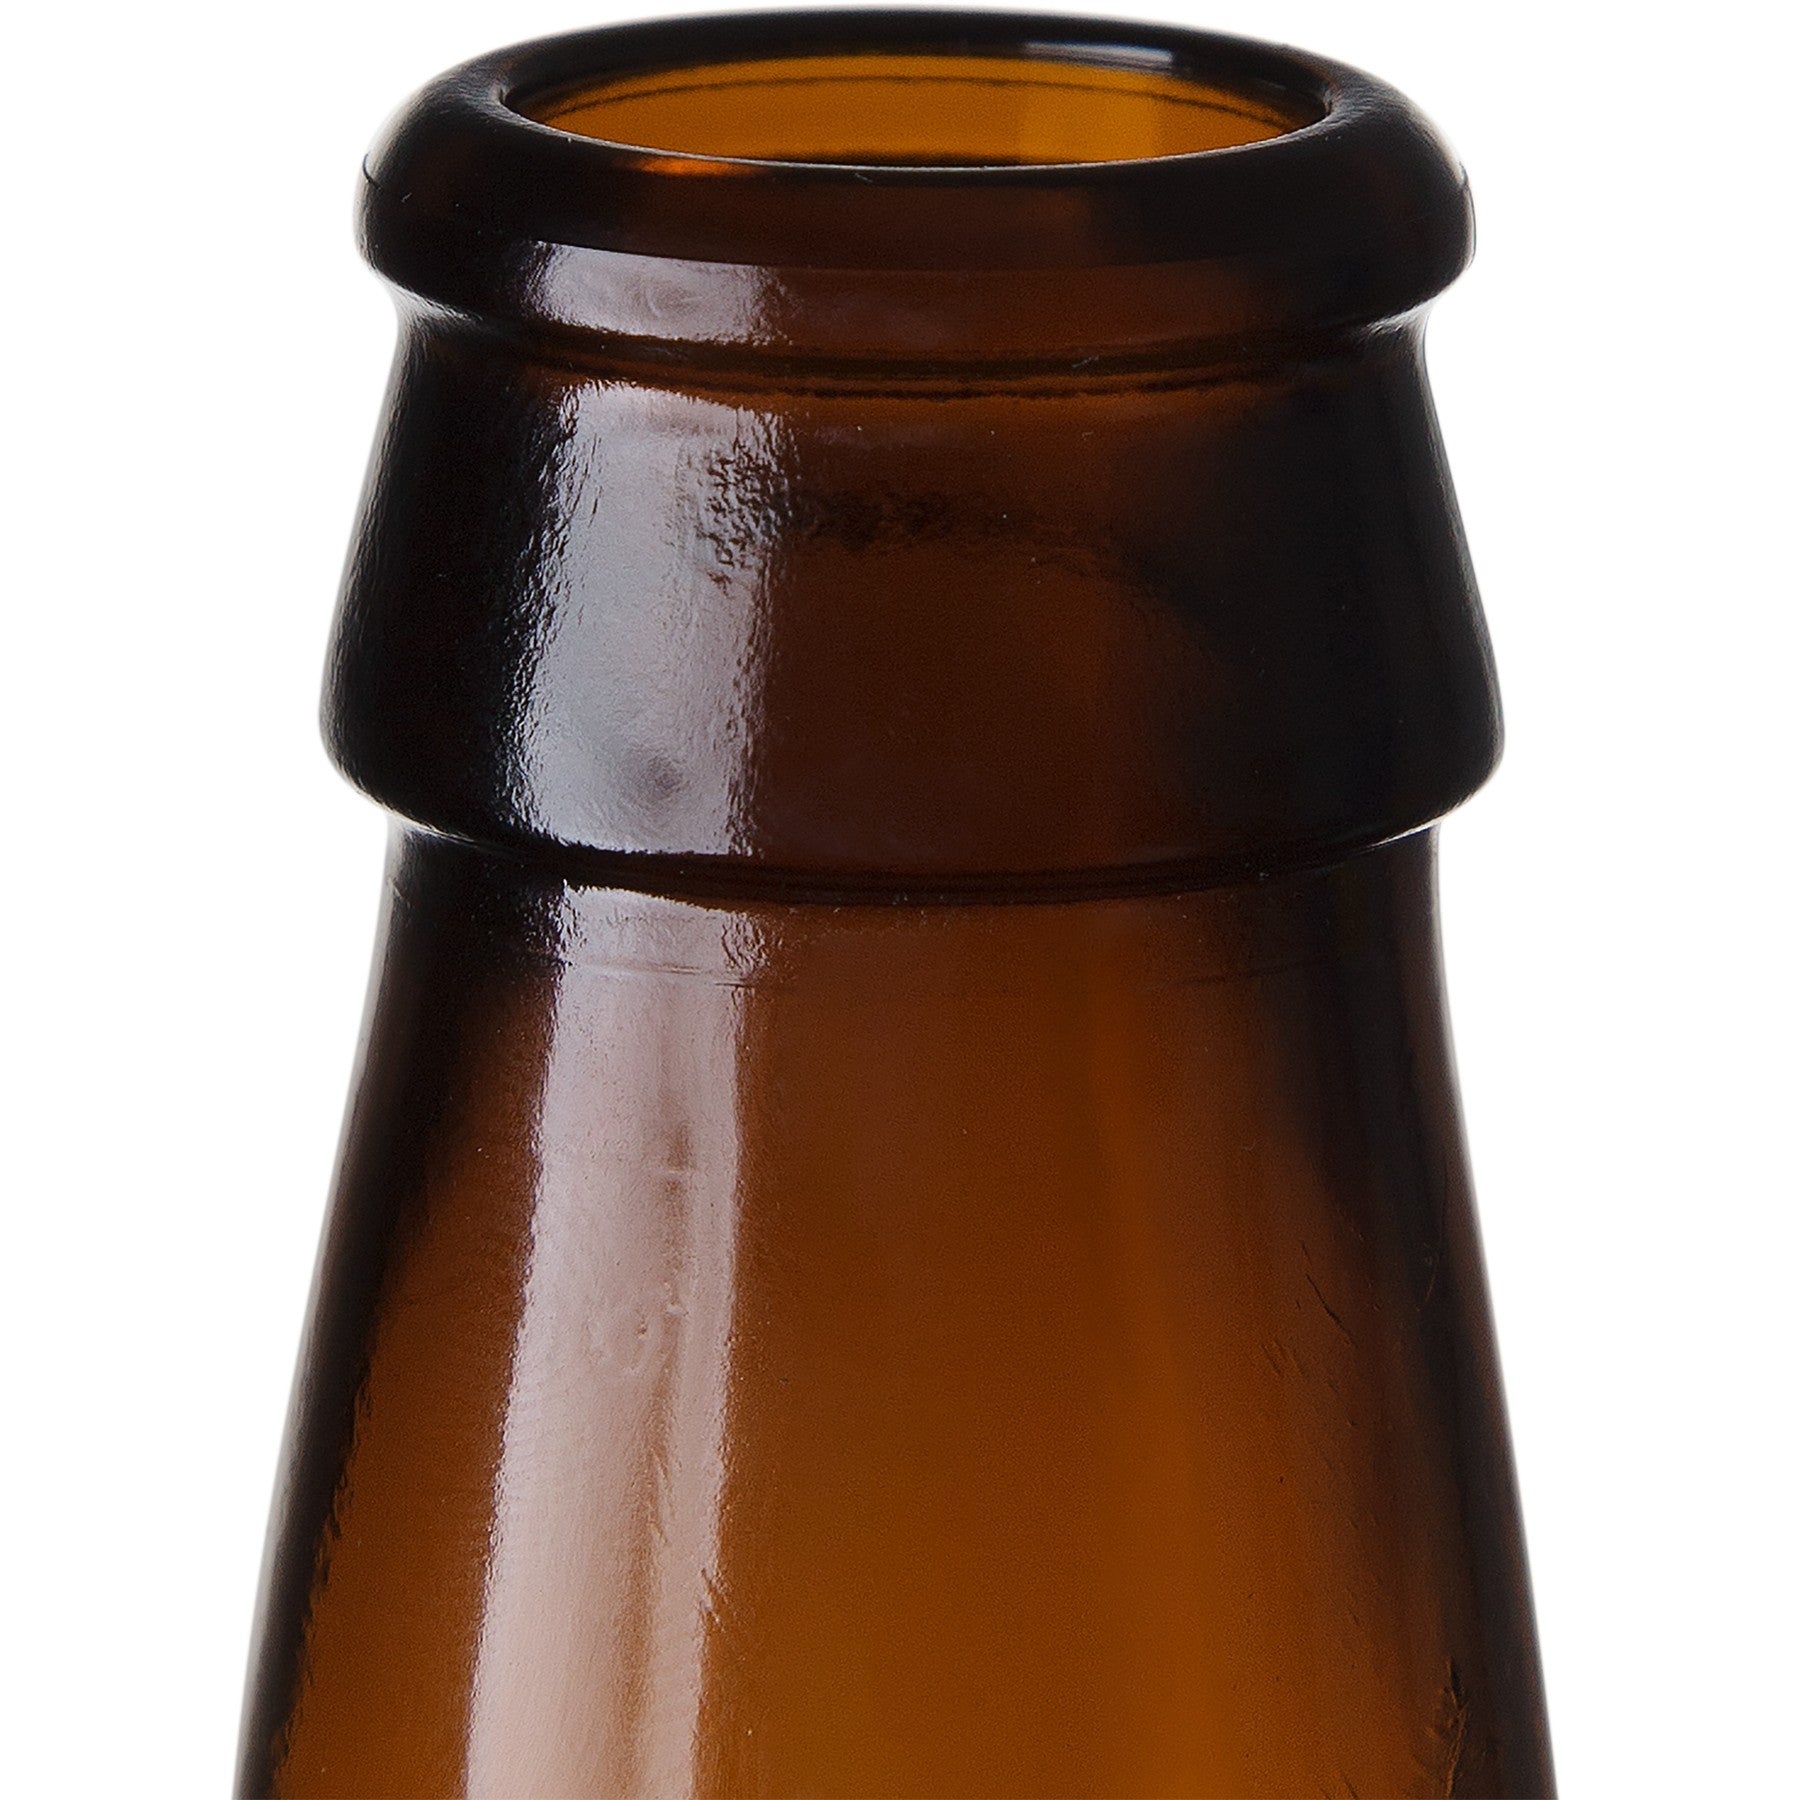 Home Brew Bottles - 12 oz. Beer Bottles - 24 Pack - Full Case